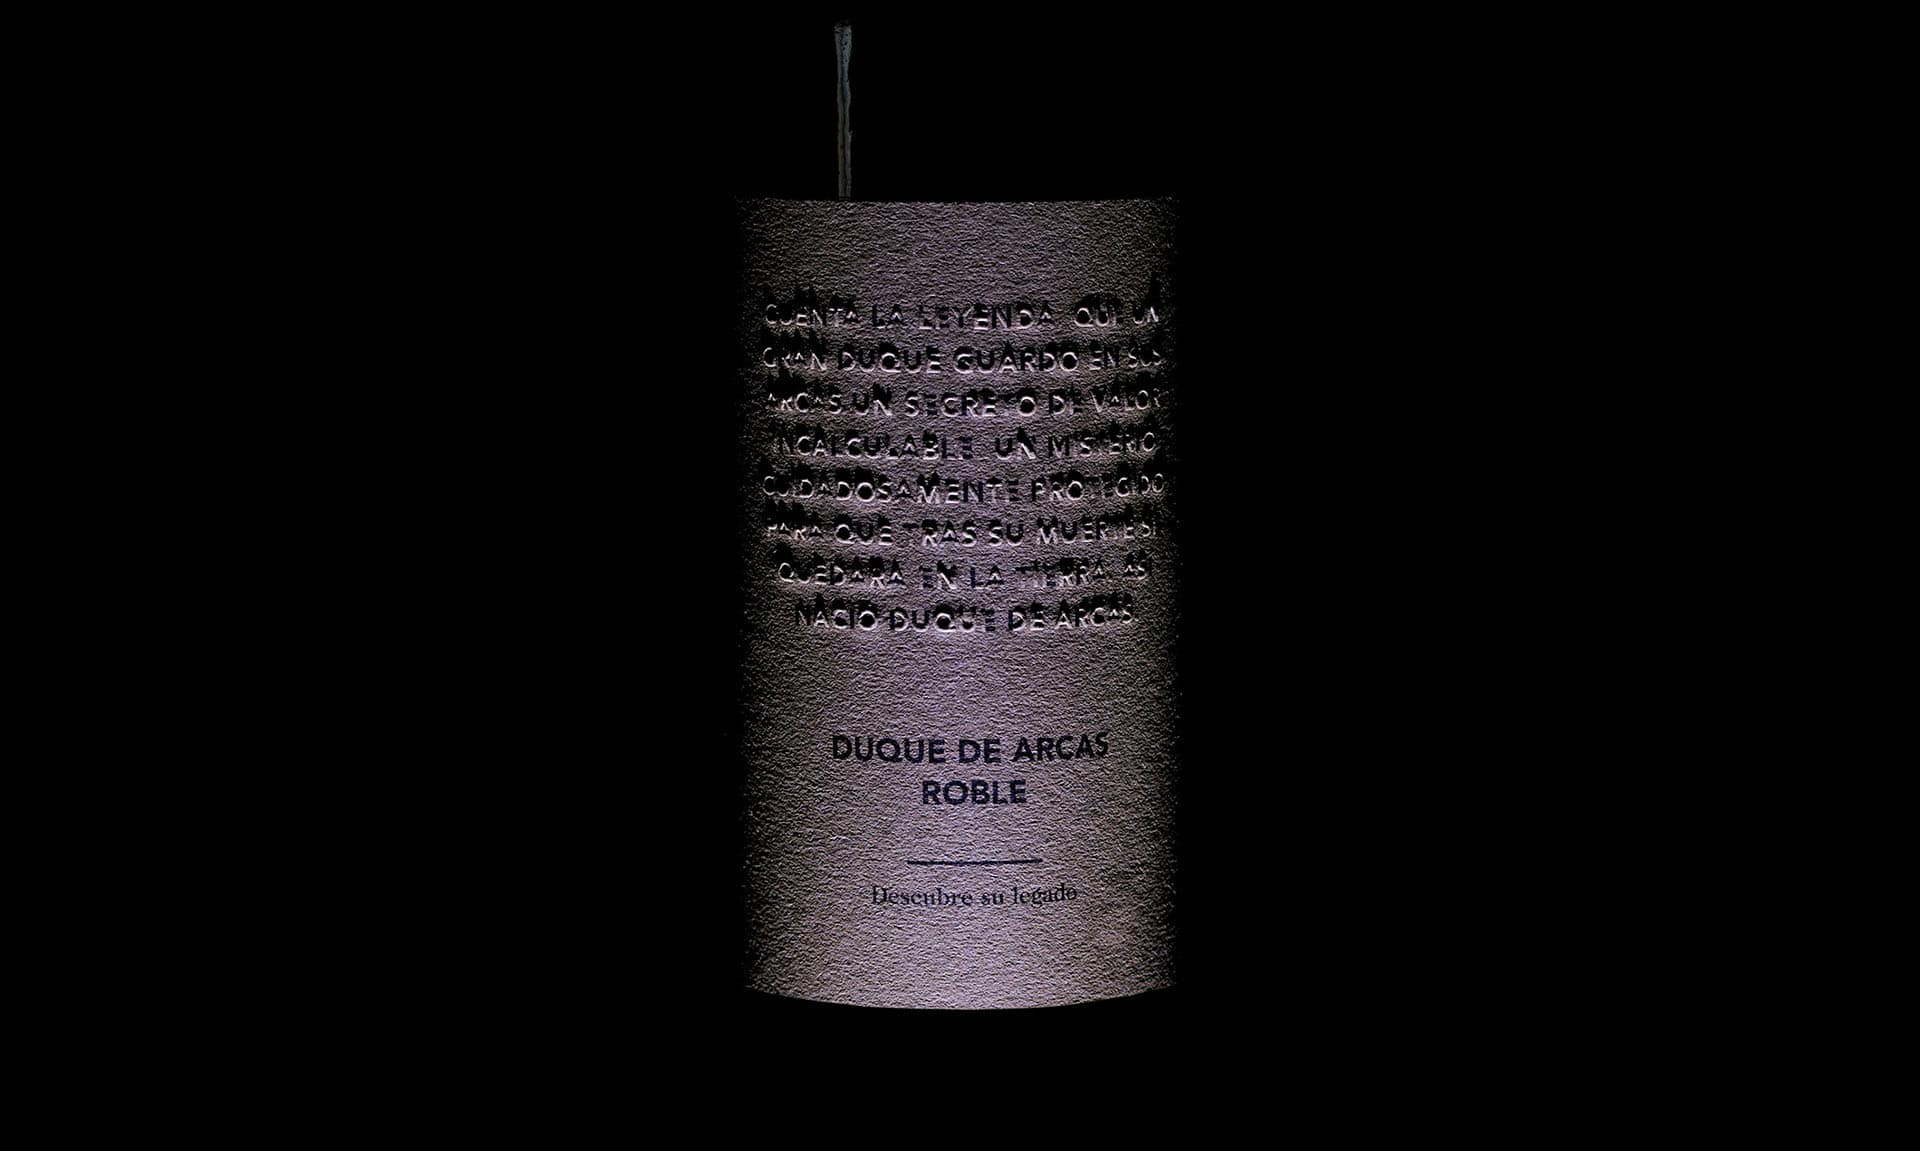 Duque de Arcas etiqueta de vino